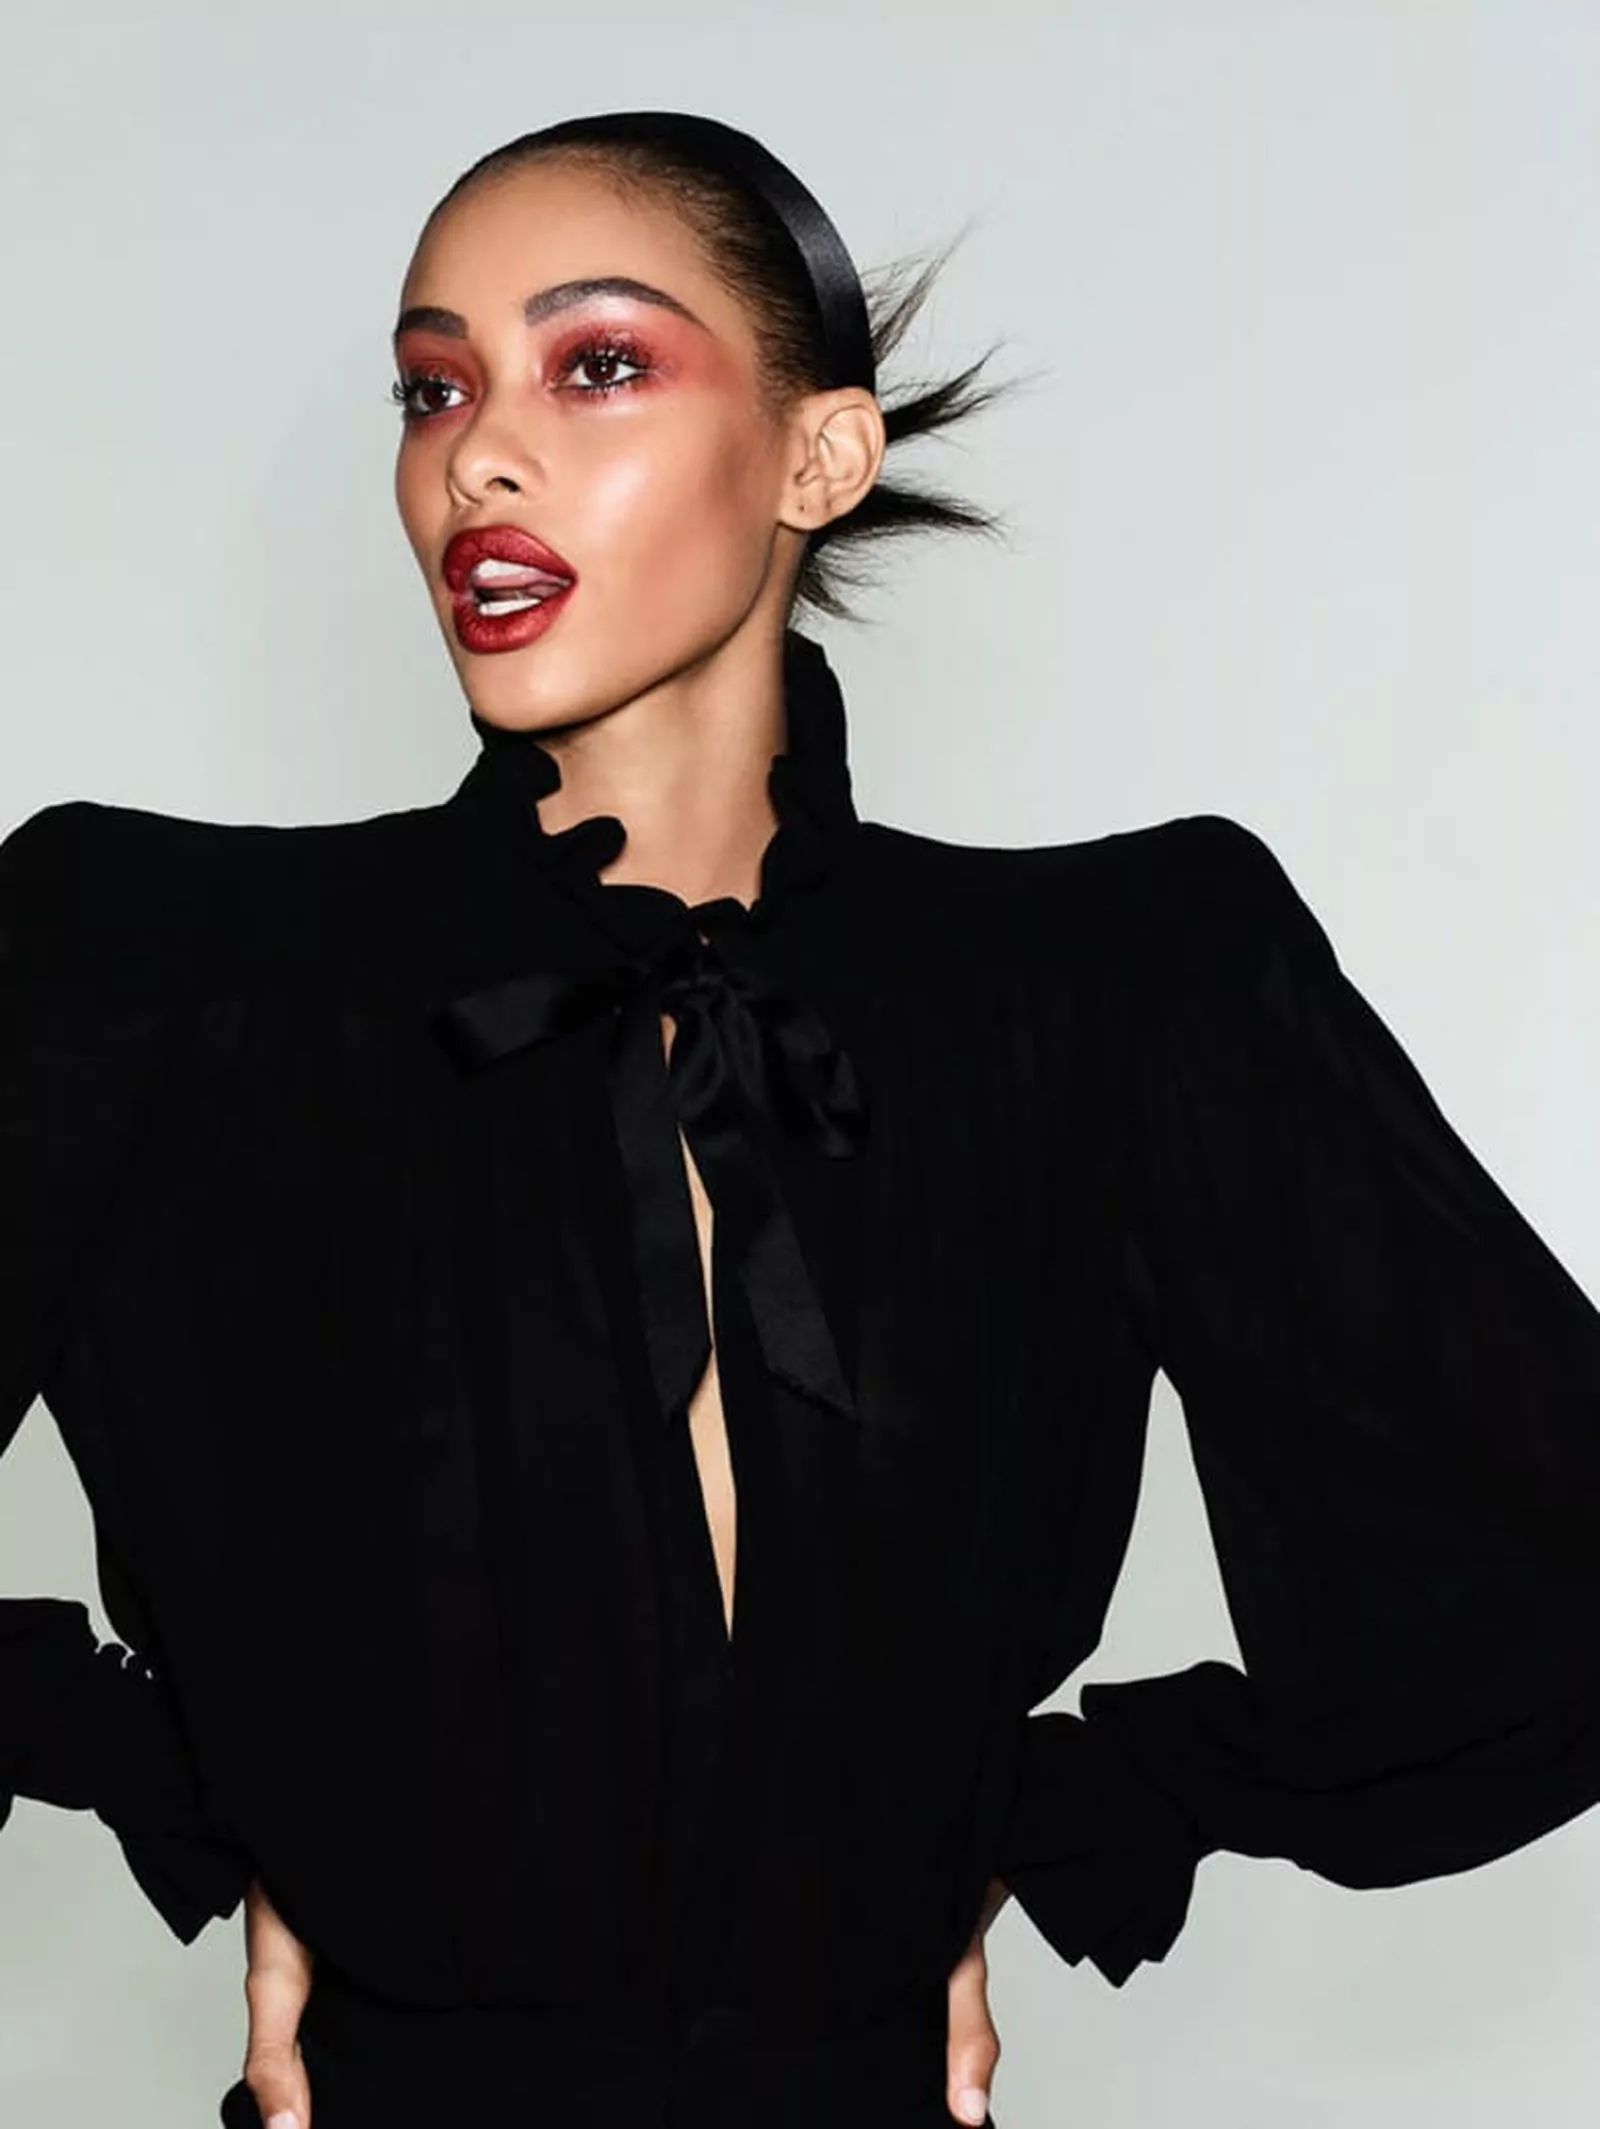 Самил Берманнелли в фотосесии Бена Хассетта для Vogue Paris, фото 2